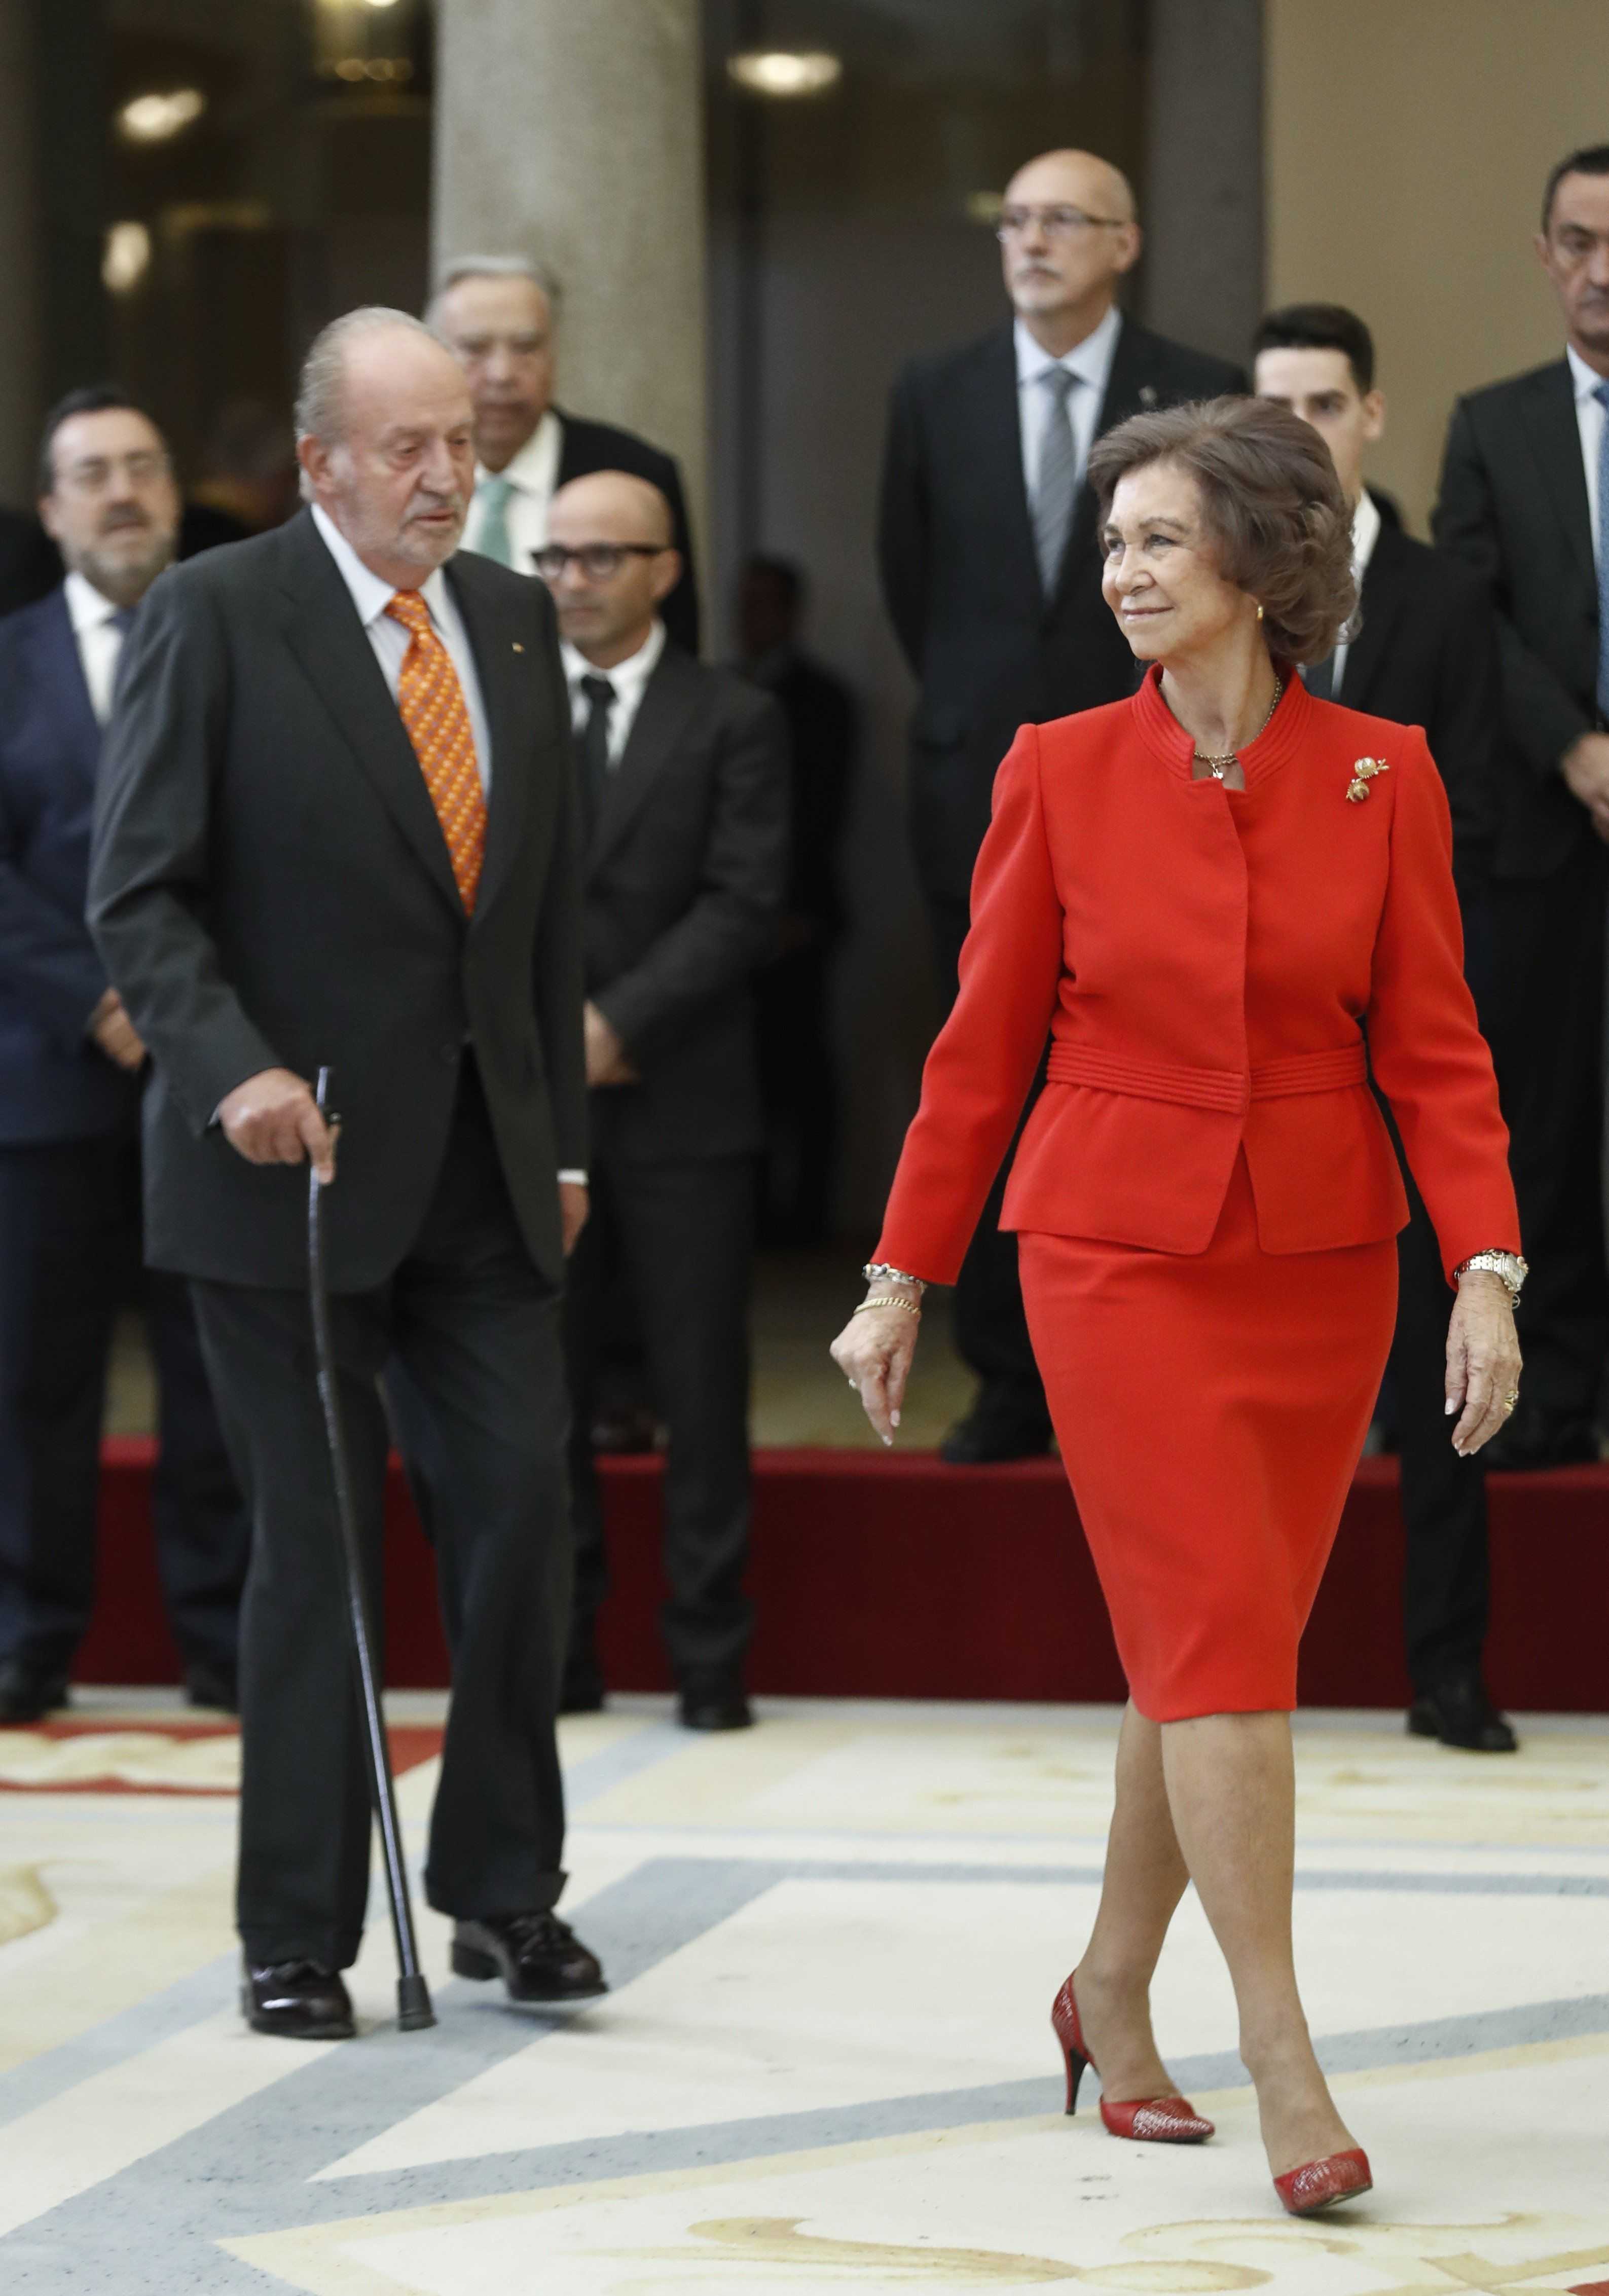 El matrimonio de Juan Carlos I y Sofía, en las últimas